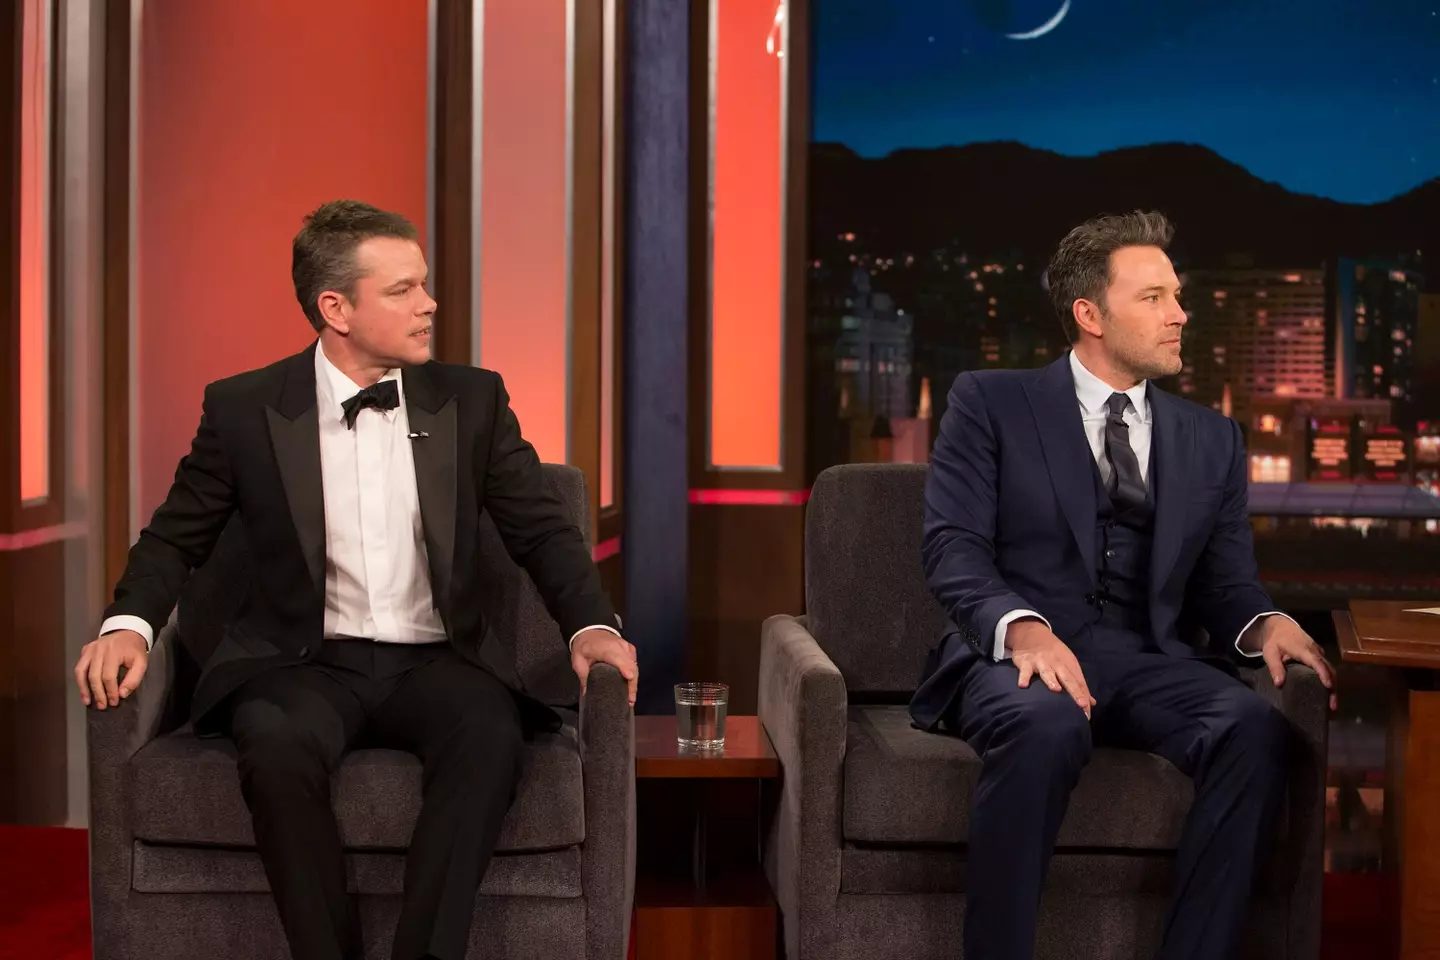 Matt Damon and Ben Affleck offered to help Jimmy Kimmel's staff.